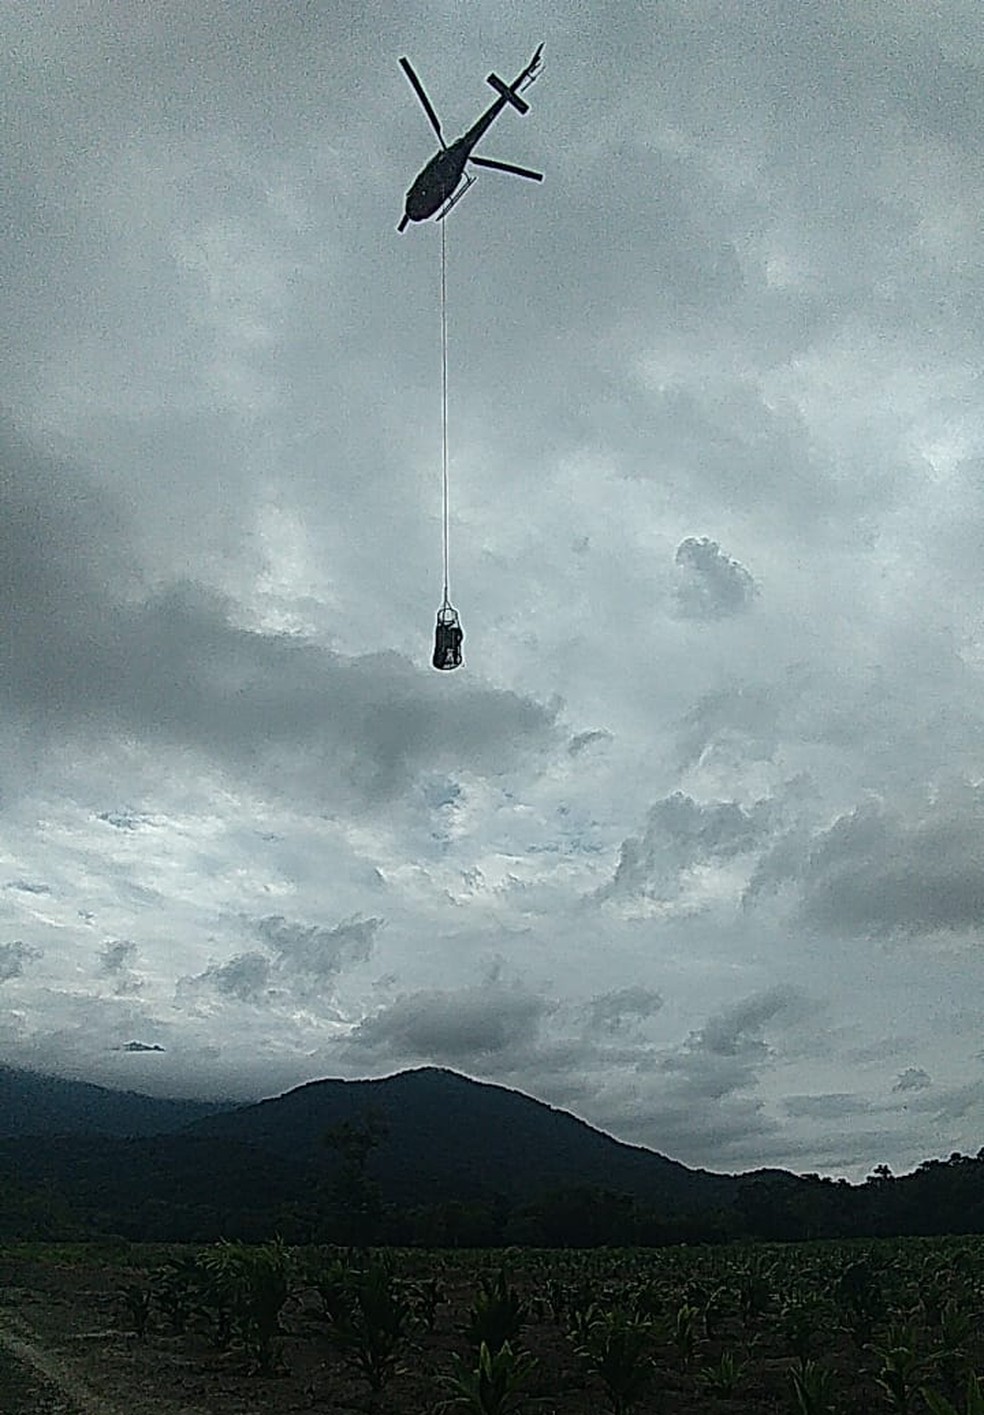 Atletas foram resgatados com a ajuda de cestos do helicóptero Águia — Foto: Divulgação/Prefeitura de Sete Barras